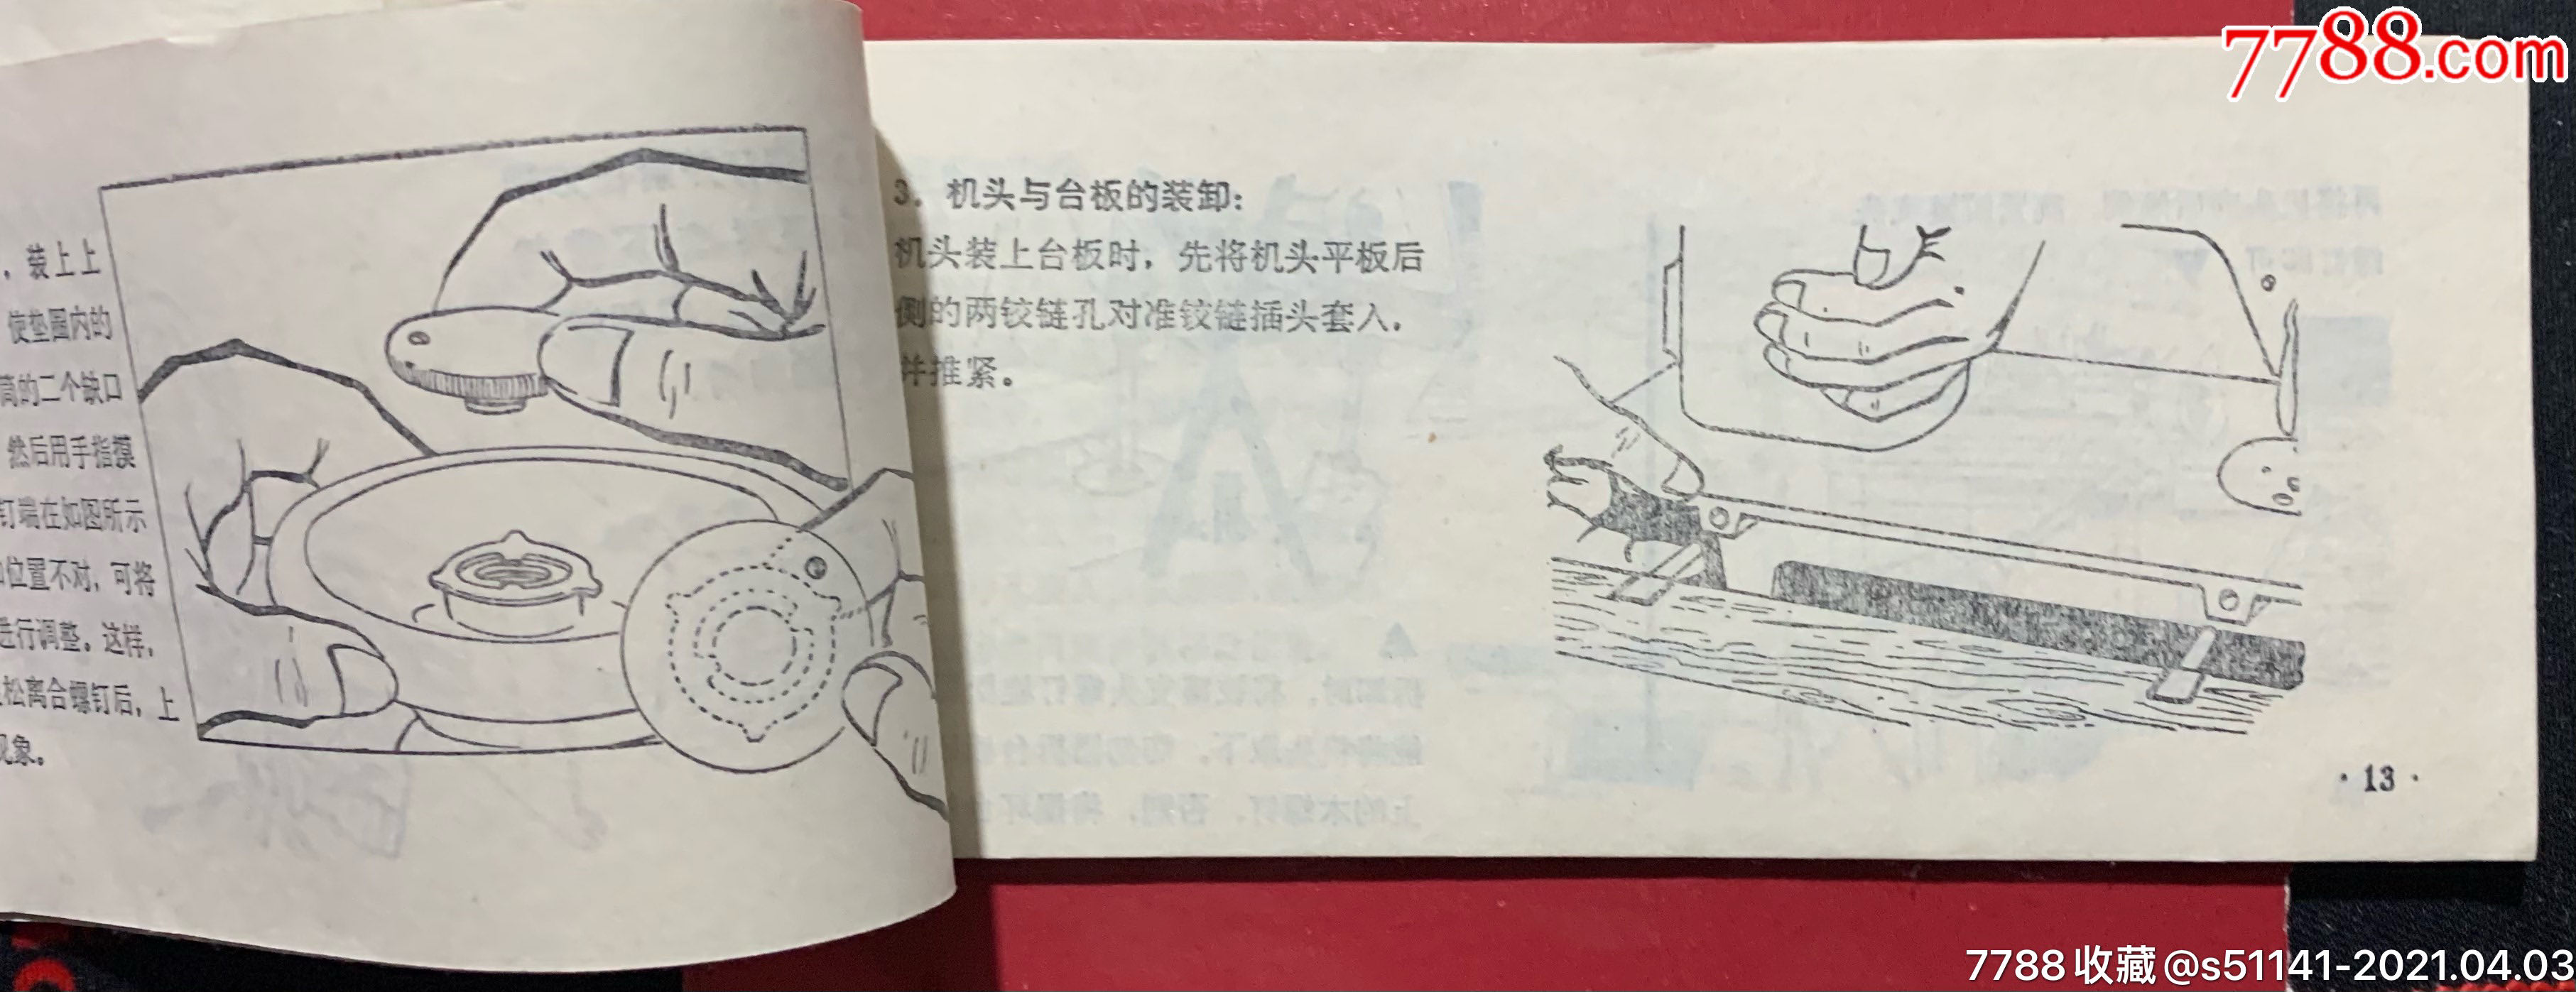 60年代上海蜜蜂jb11型缝纫机说明书图文并茂以货论价